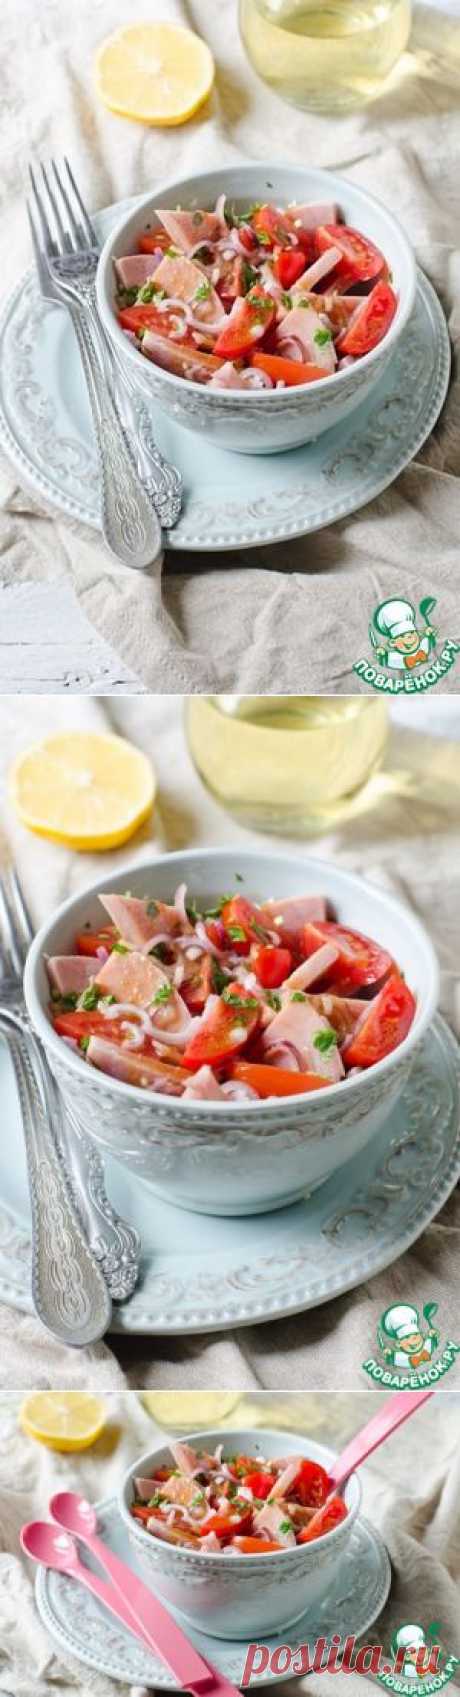 Салат с ветчиной, помидорами черри и красным луком - кулинарный рецепт